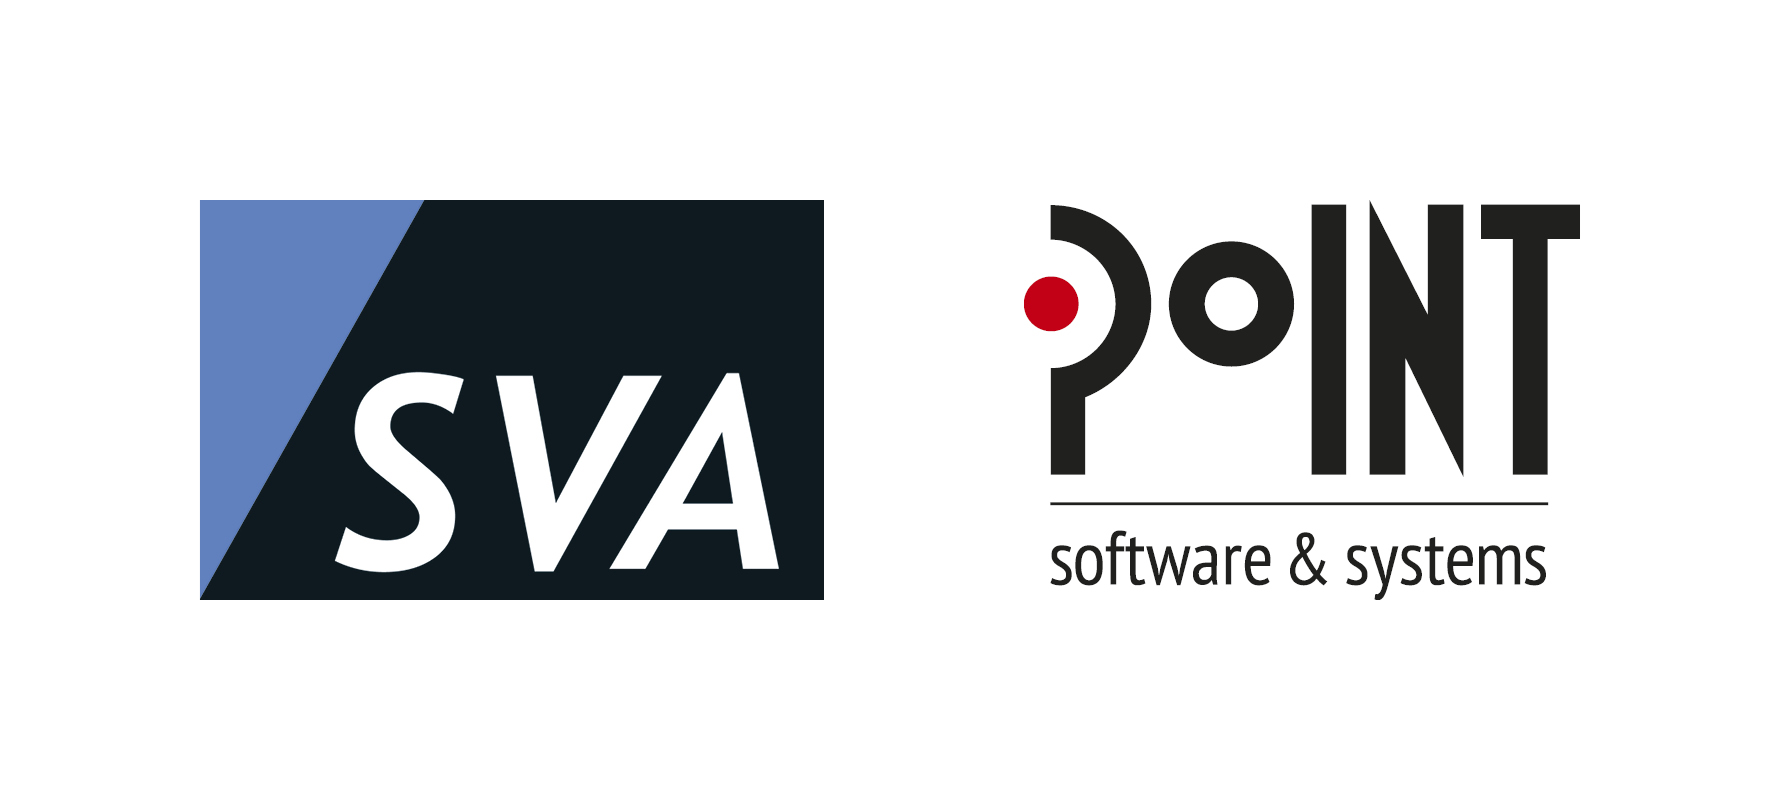 SVA und PoINT: Neue Partnerschaft für optimales Datenmanagement